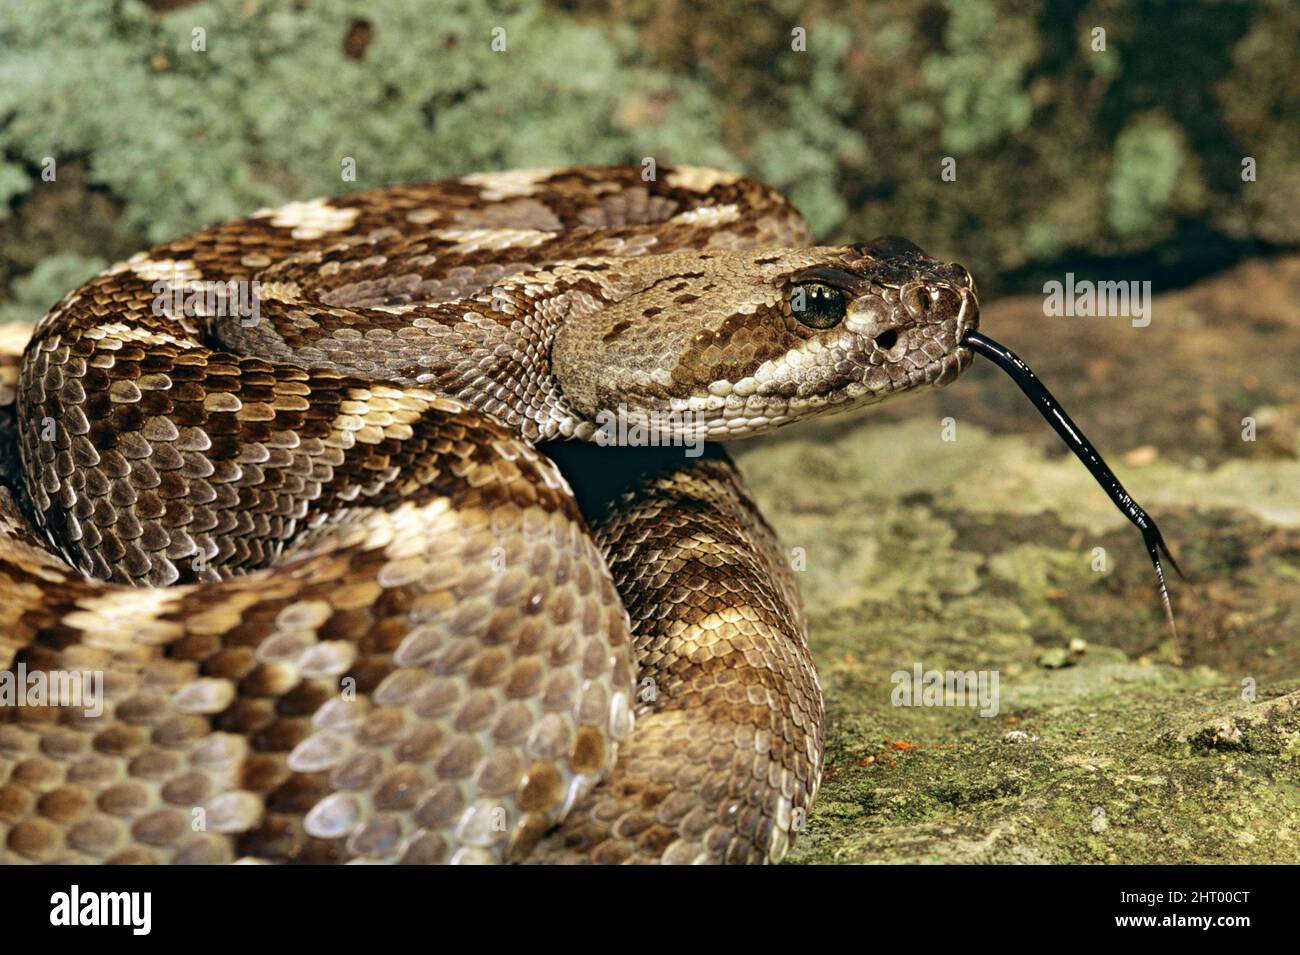 Serpiente de cascabel de cola negra (Crotalus molossus molussus), retrato con lengua forked extendida. Oeste de Texas, EE.UU Foto de stock